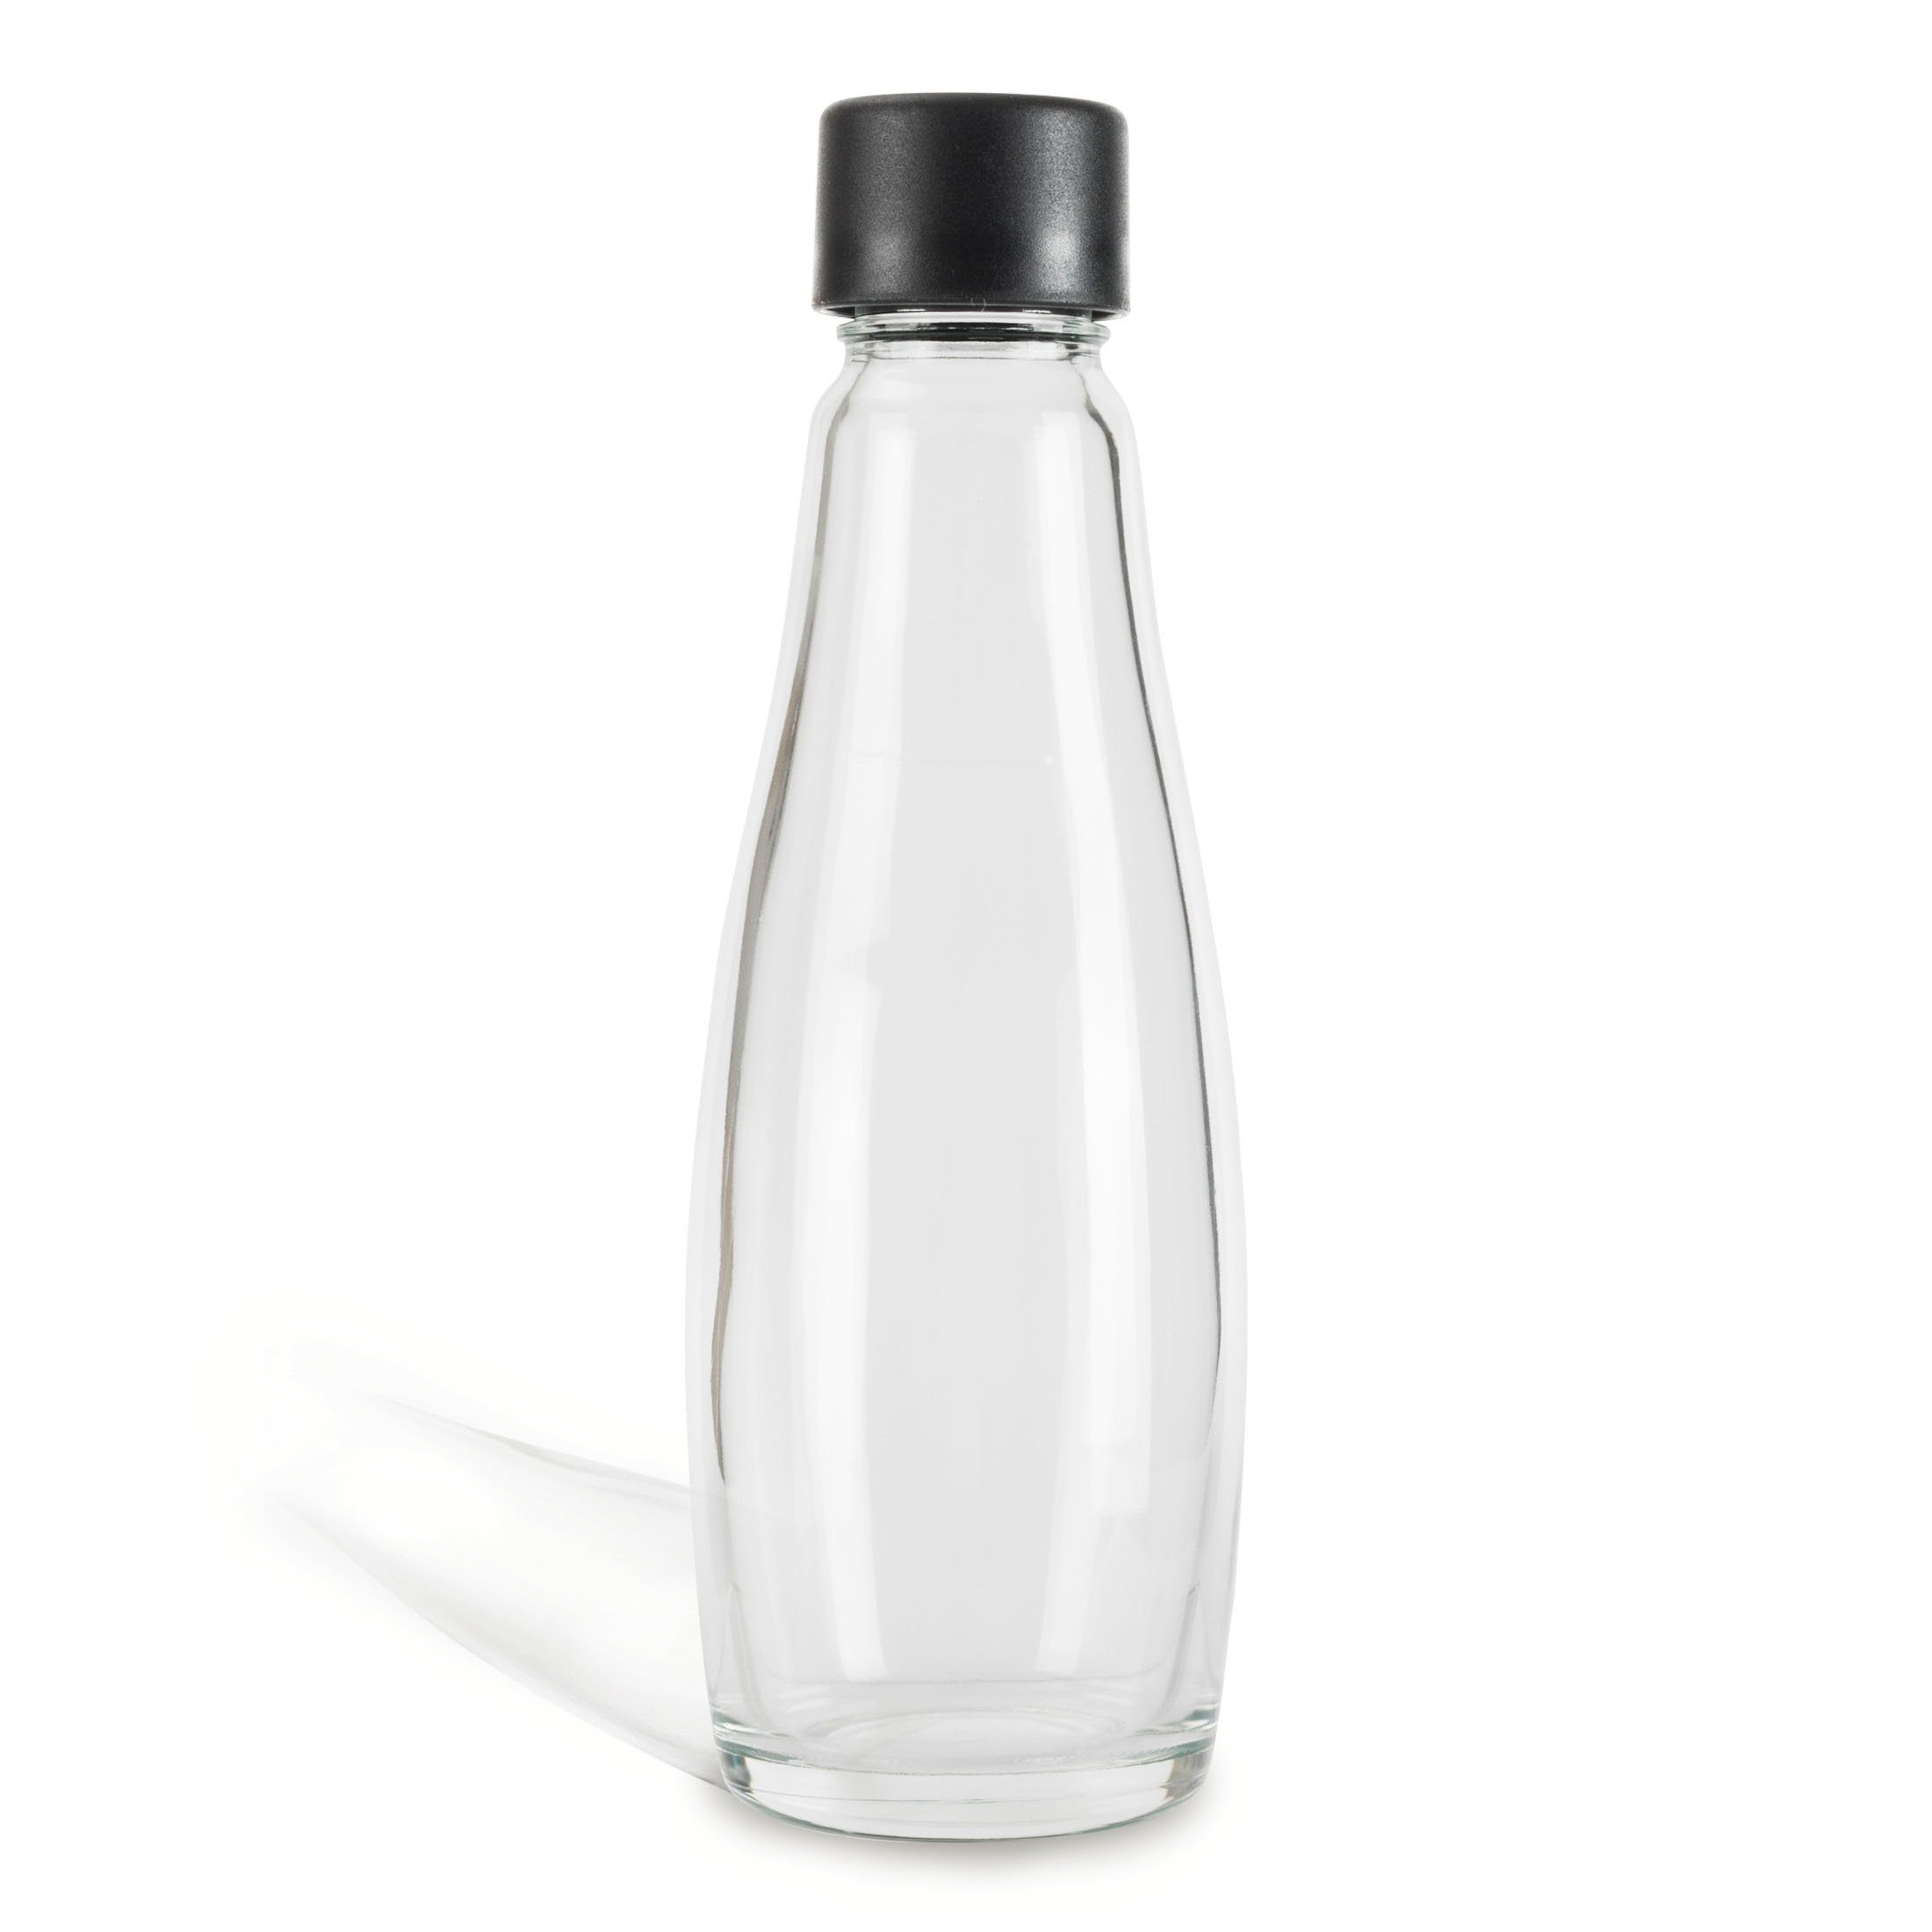 Zoomyo Wassersprudler Flasche Ersatz Glasflaschen für Wassersprudler, schickes Glaskaraffendesign, (set, 1 x Glasflasche), ca. 0,6Liter Volumen,1, 2 oder 3 Sprudler-Flaschen im Set, stabil Glasflasche 1er